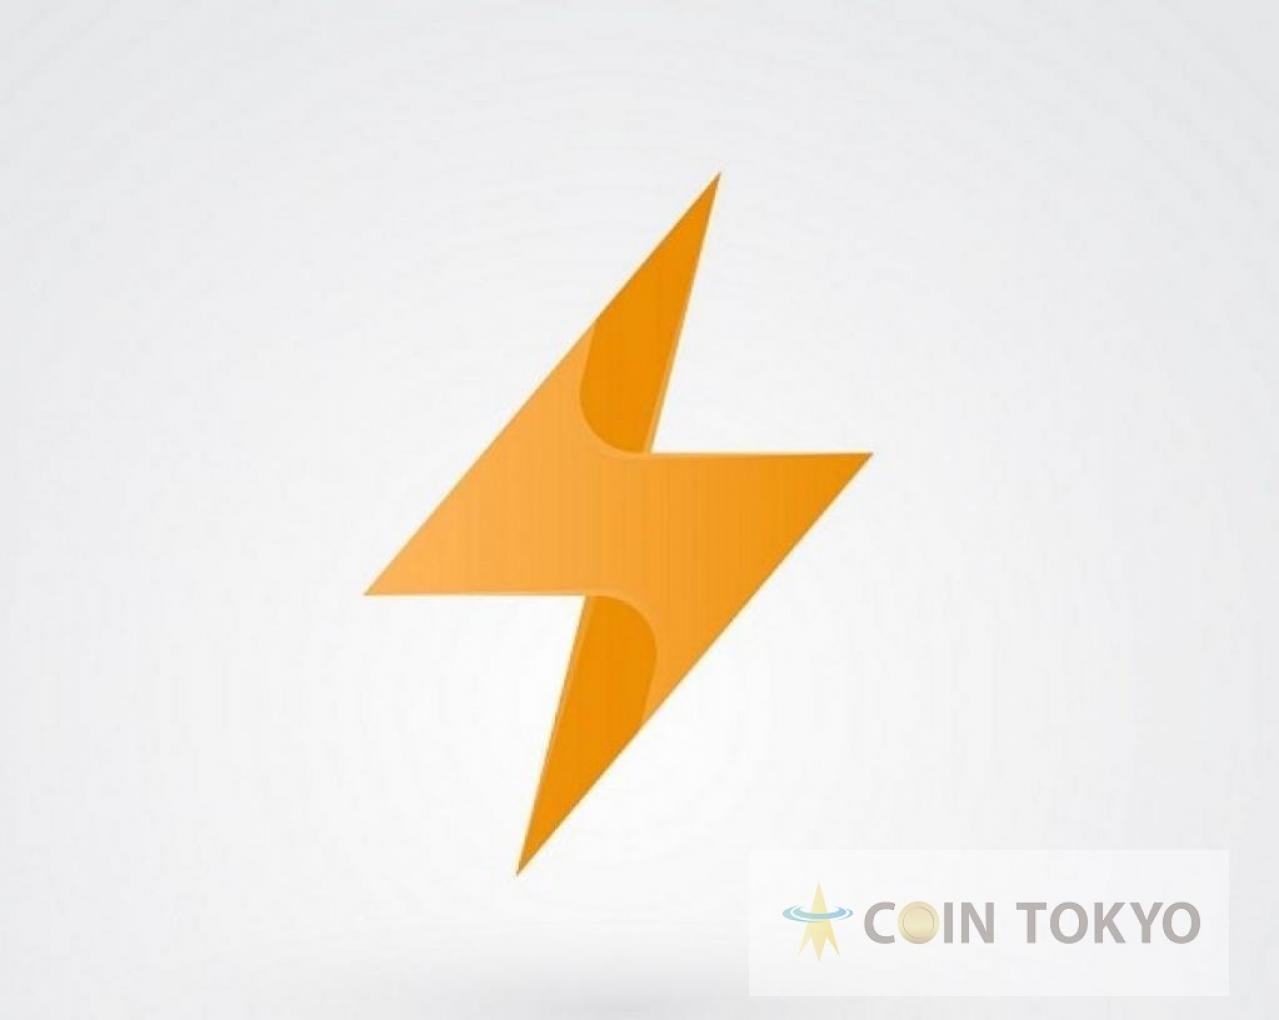 发行了可以在Lightning Network +虚拟货币新闻网站Coin Tokyo上解决的皇家战斗游戏Lightnite